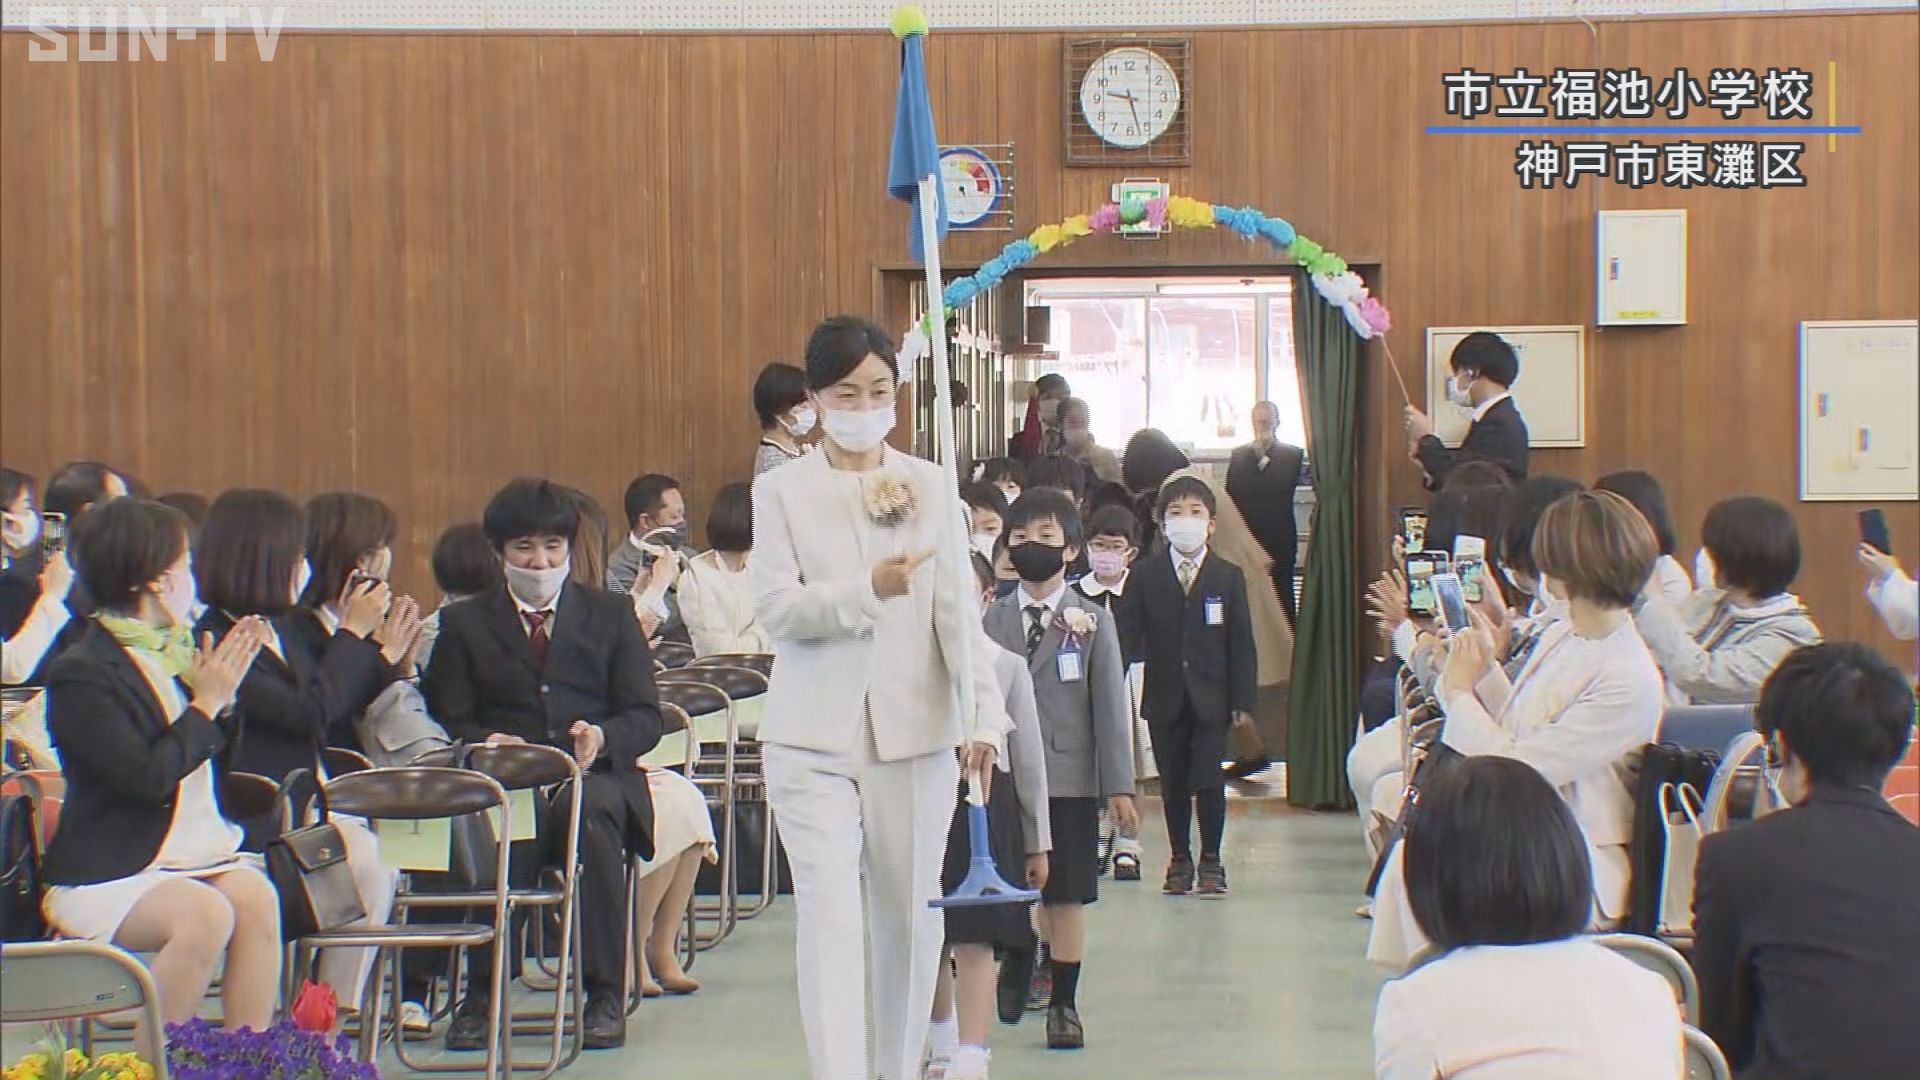 神戸市立の小学校で入学式 感染対策を徹底 サンテレビニュース